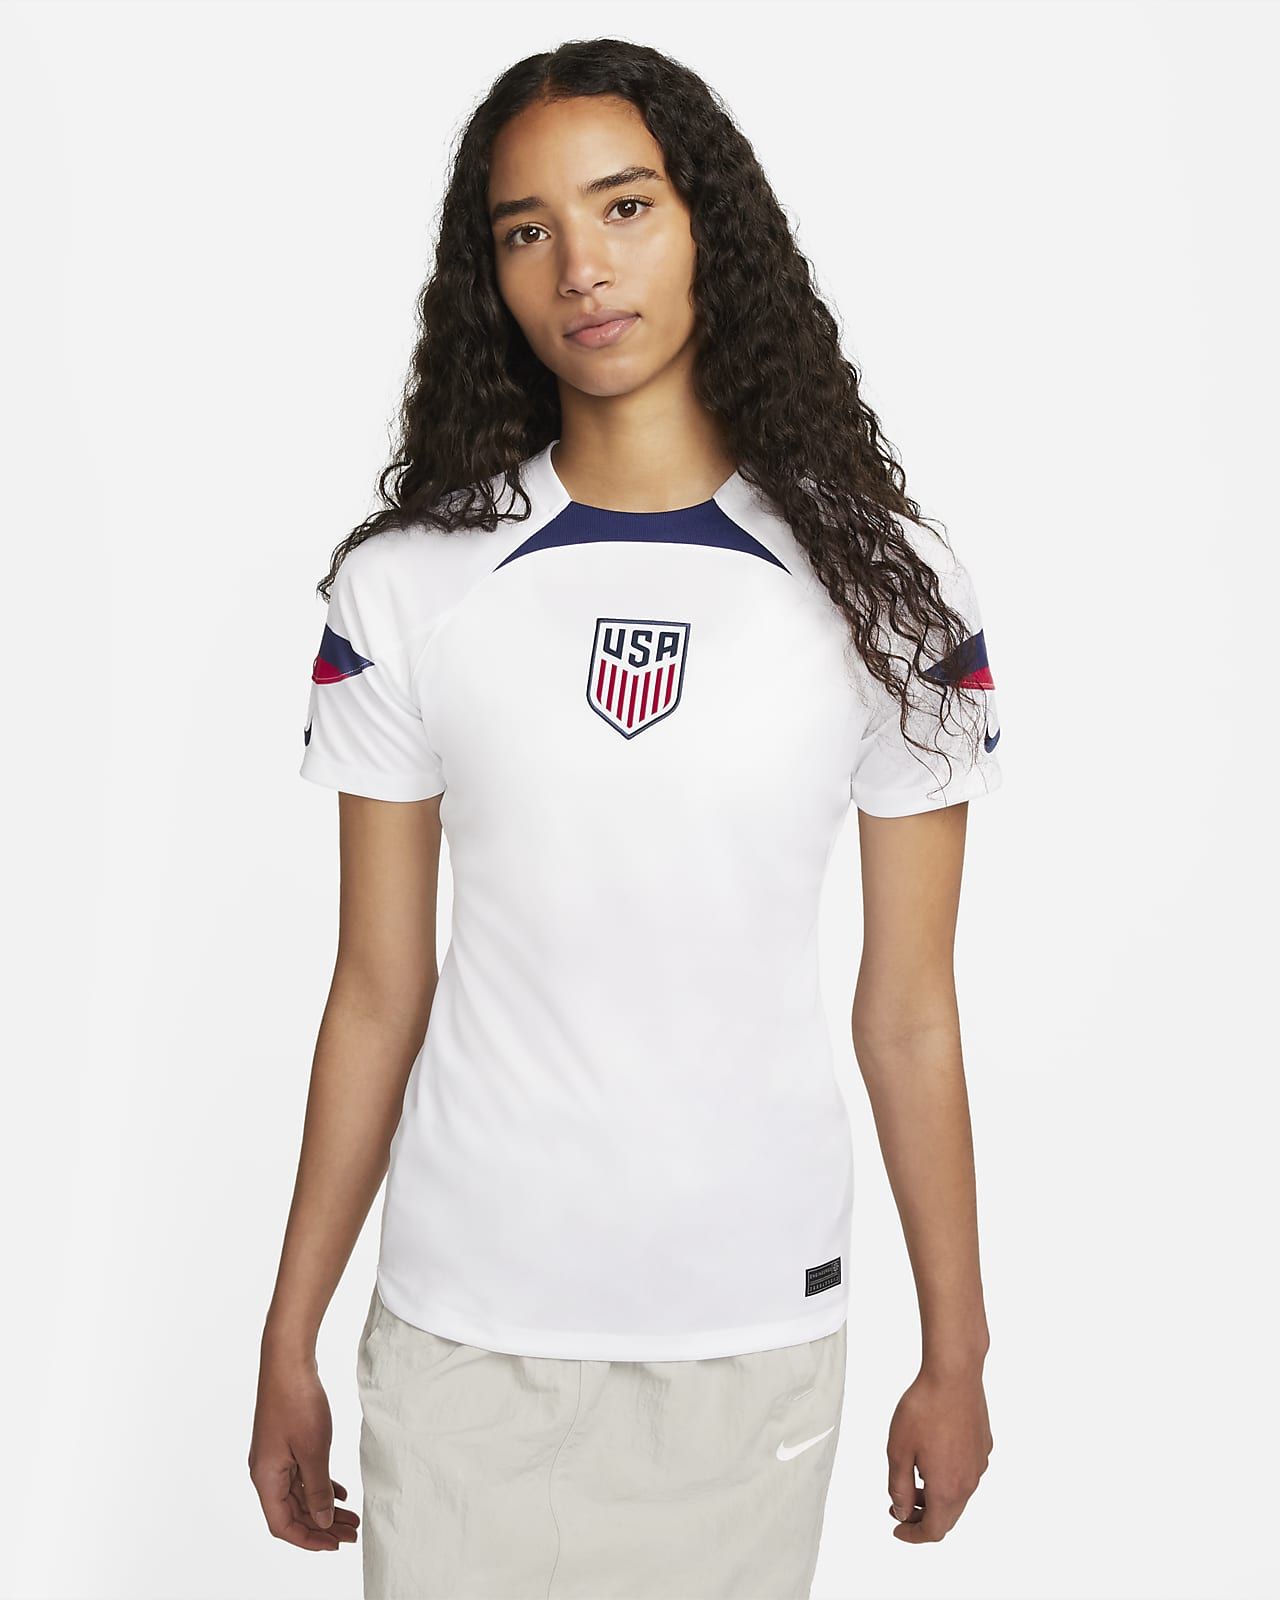 Women's Nike Dri-FIT Soccer Jersey | Nike (US)